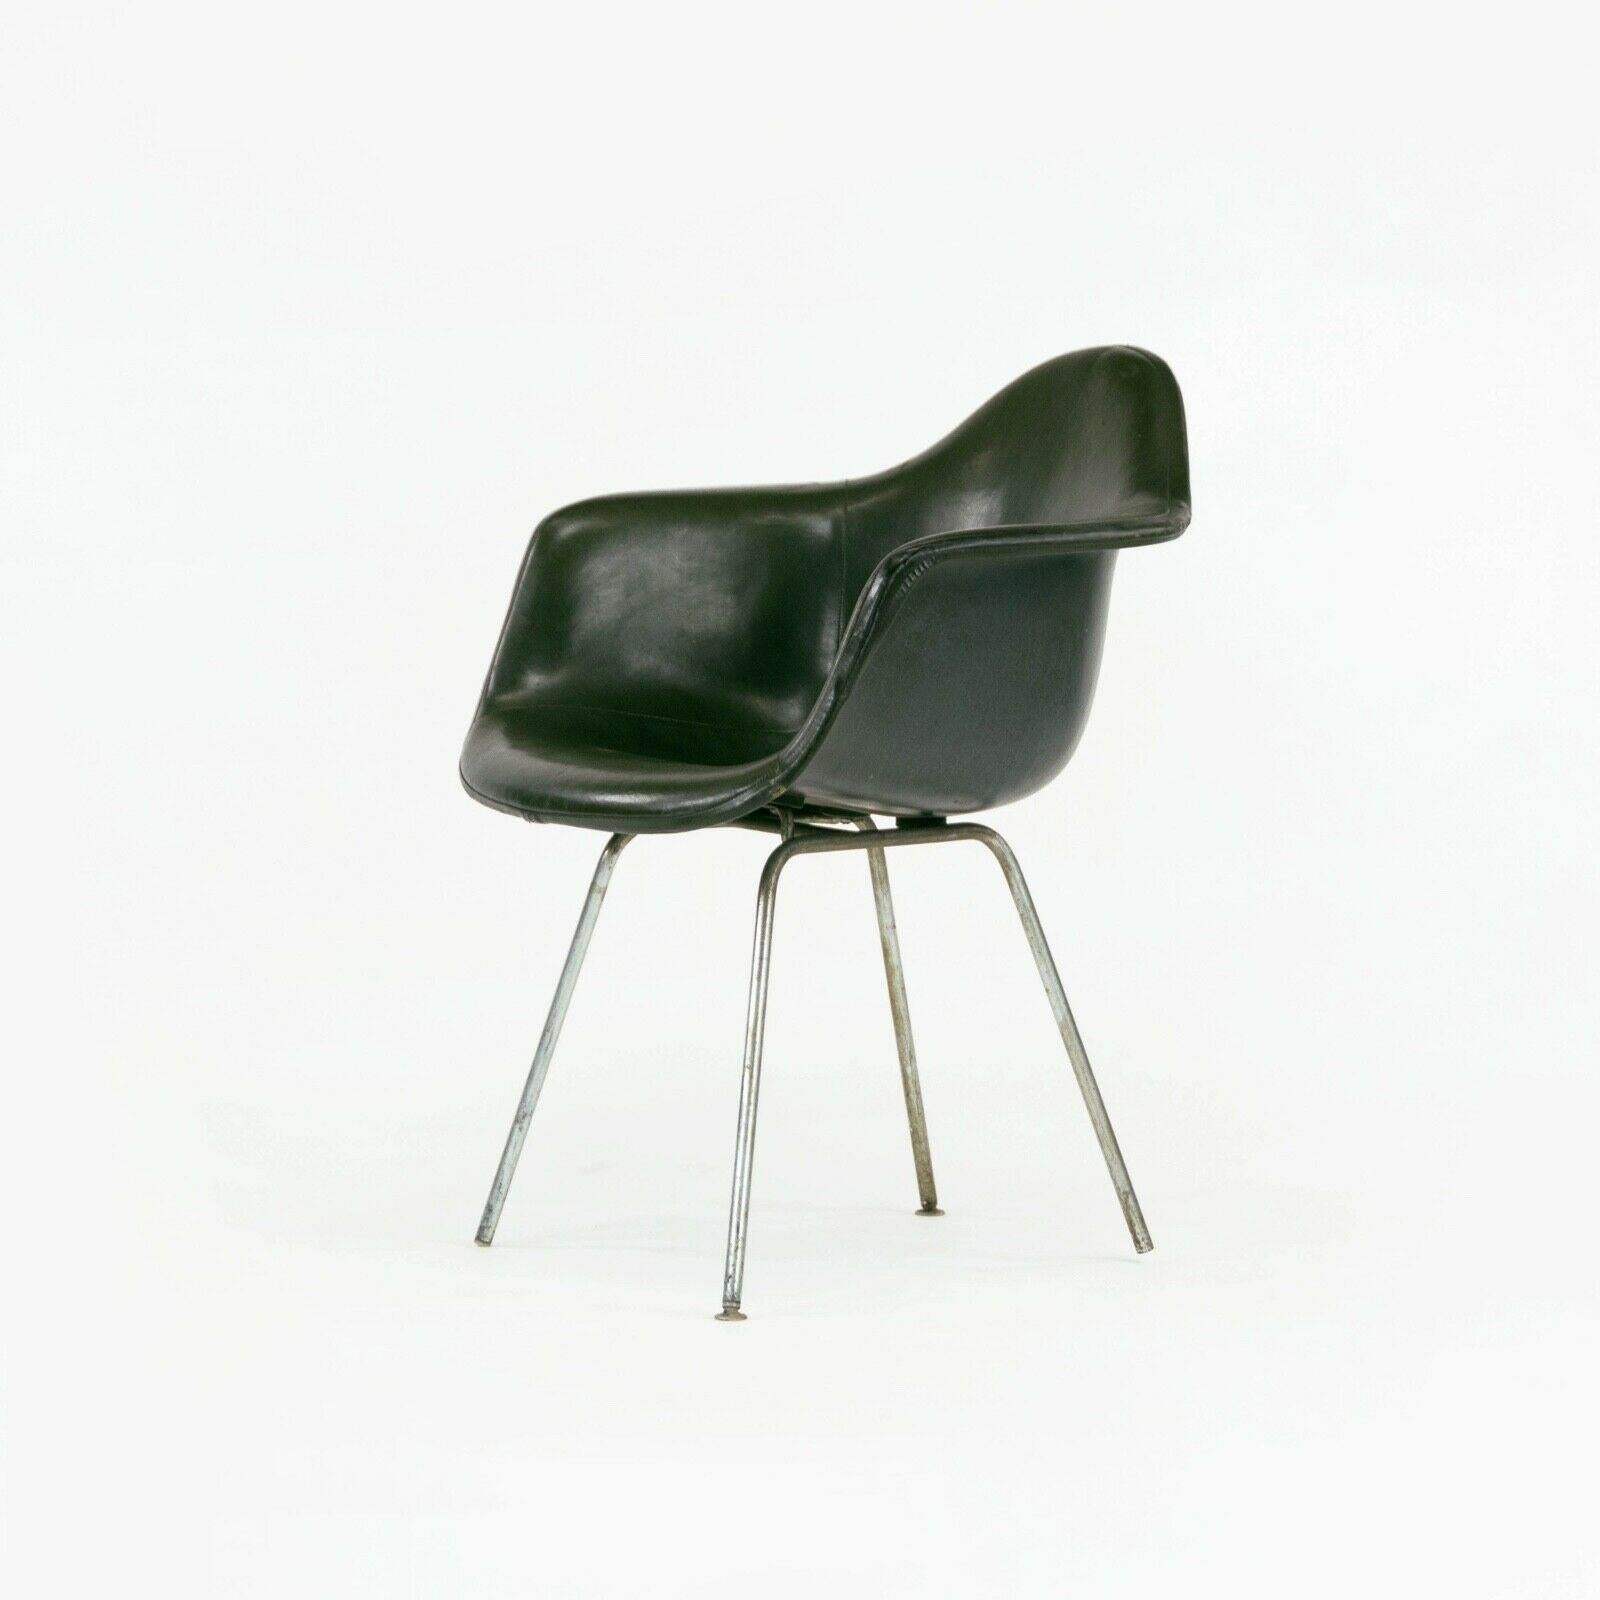 1959 Herman Miller Eames DAX Fiberglass Arm Shell Chair with Green Removable Pad (Chaise à accoudoirs en fibre de verre avec coussin amovible vert) en vente 1